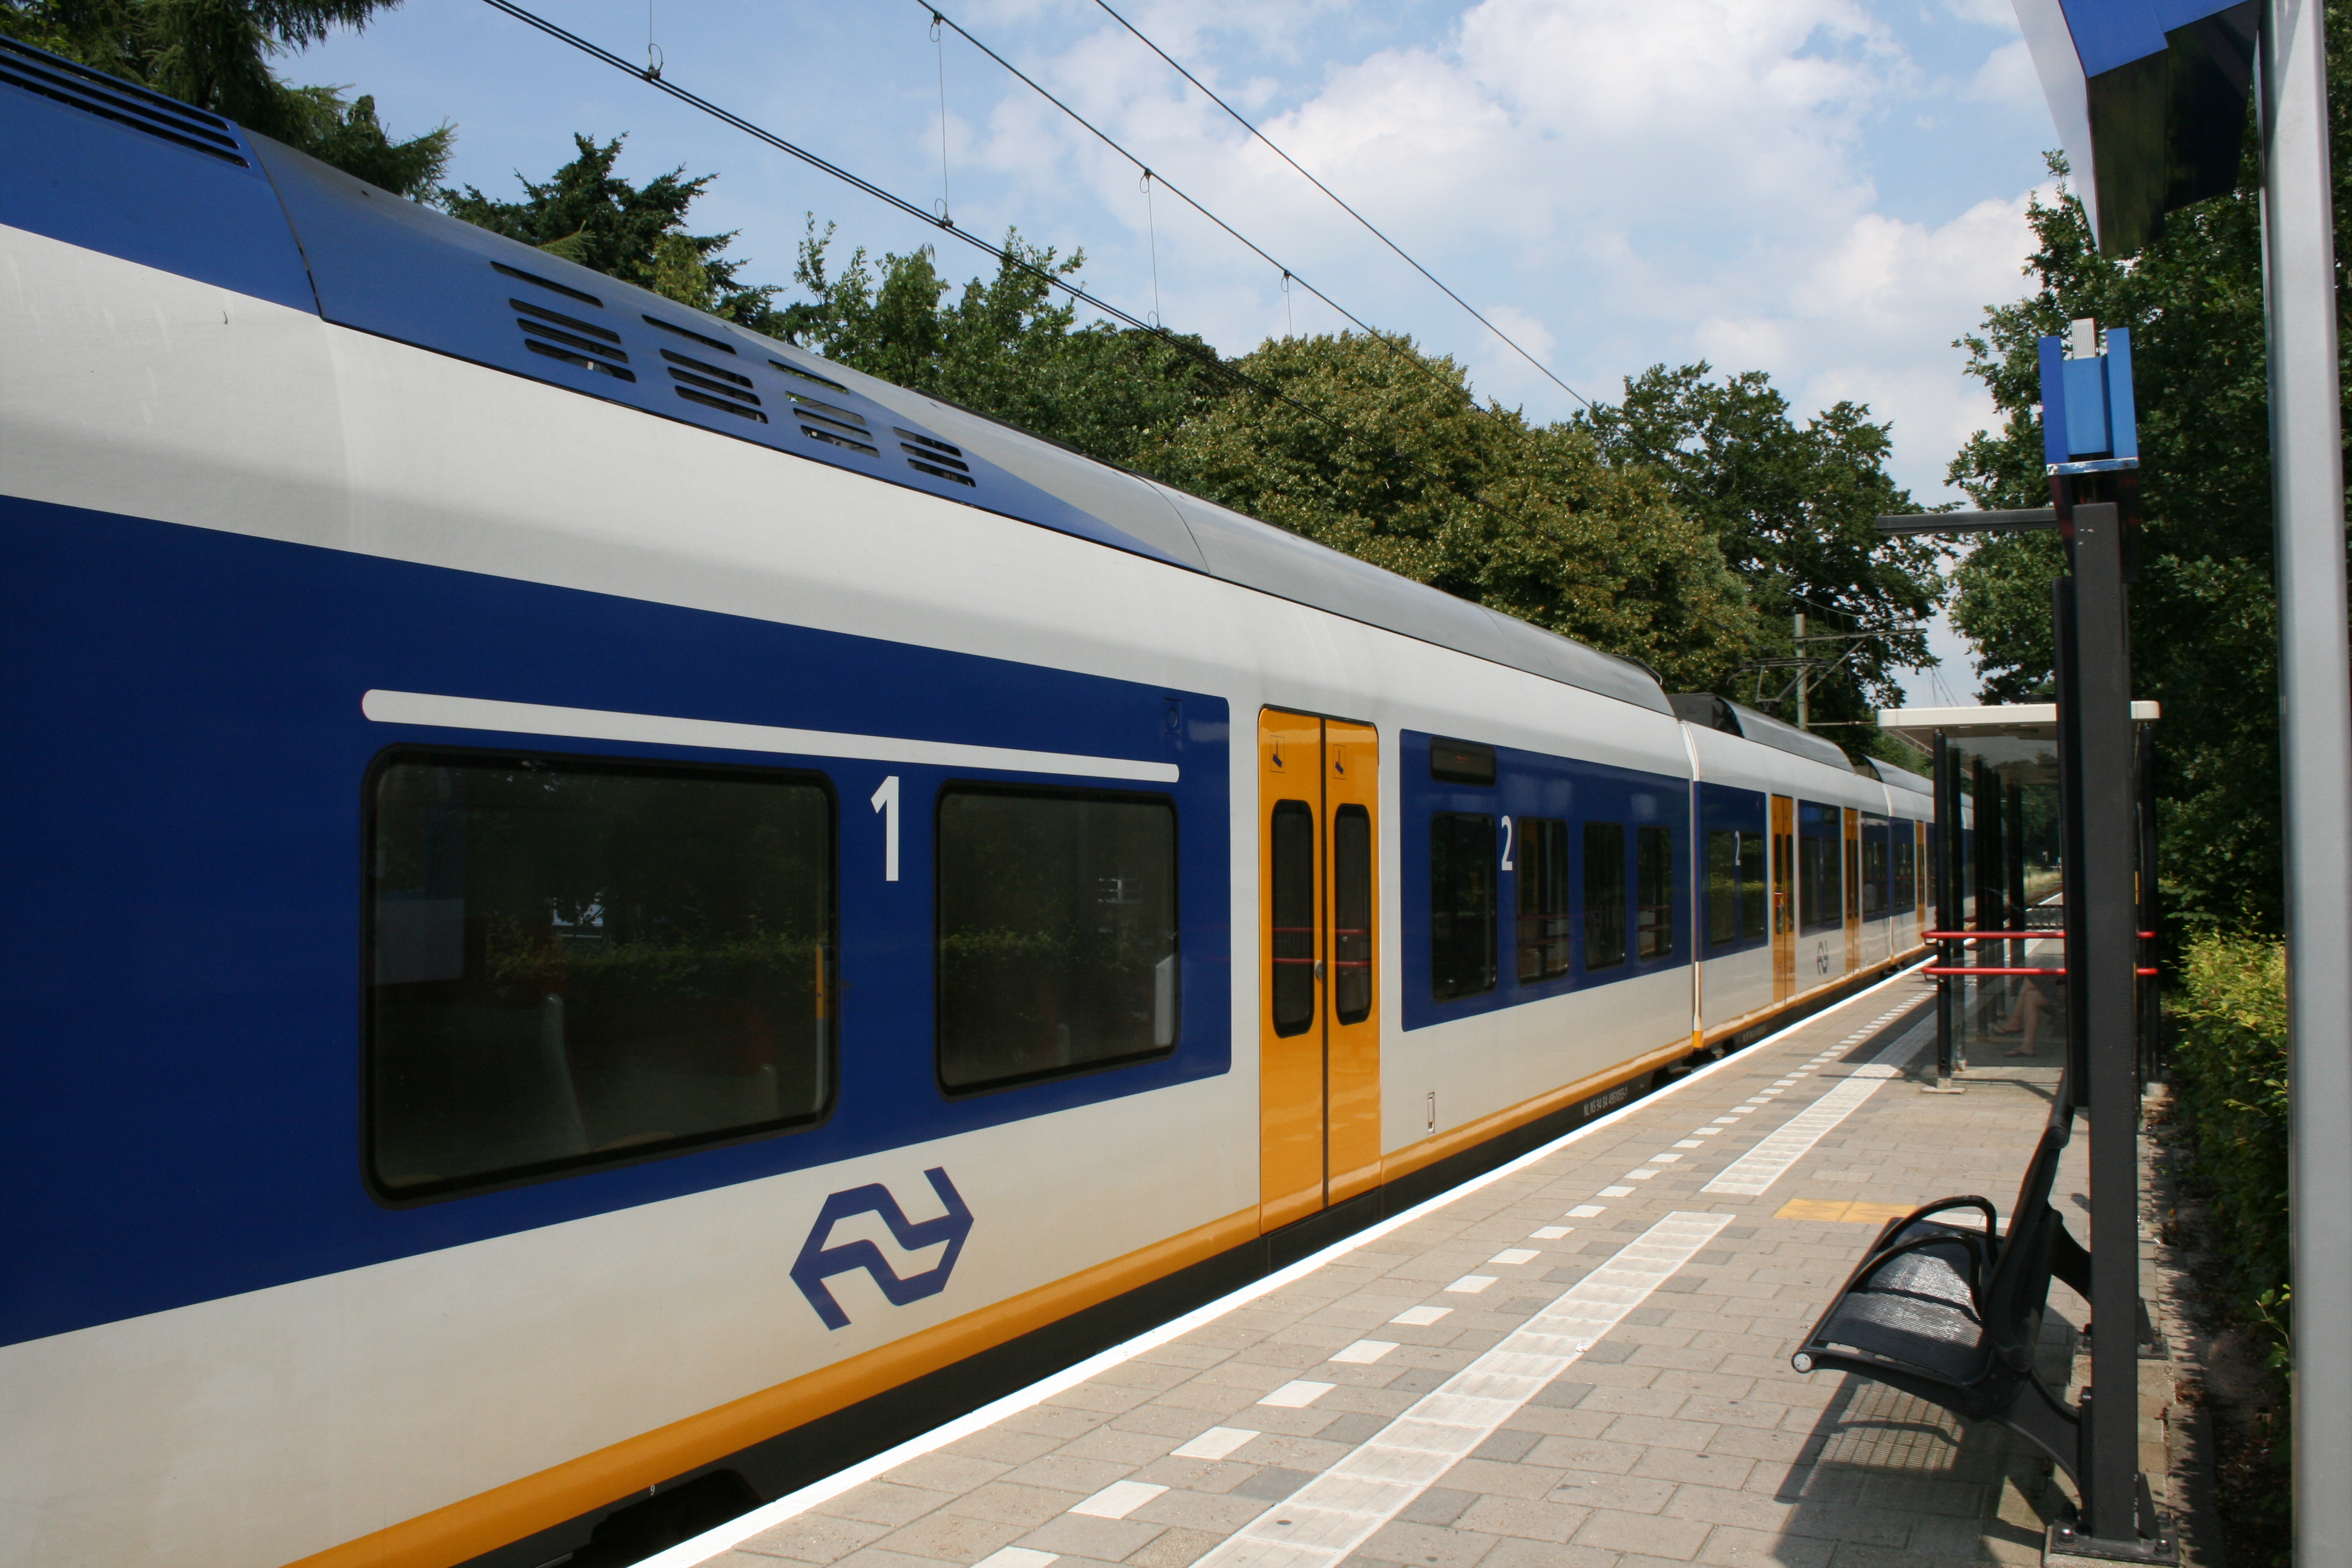 Station SoestZuid